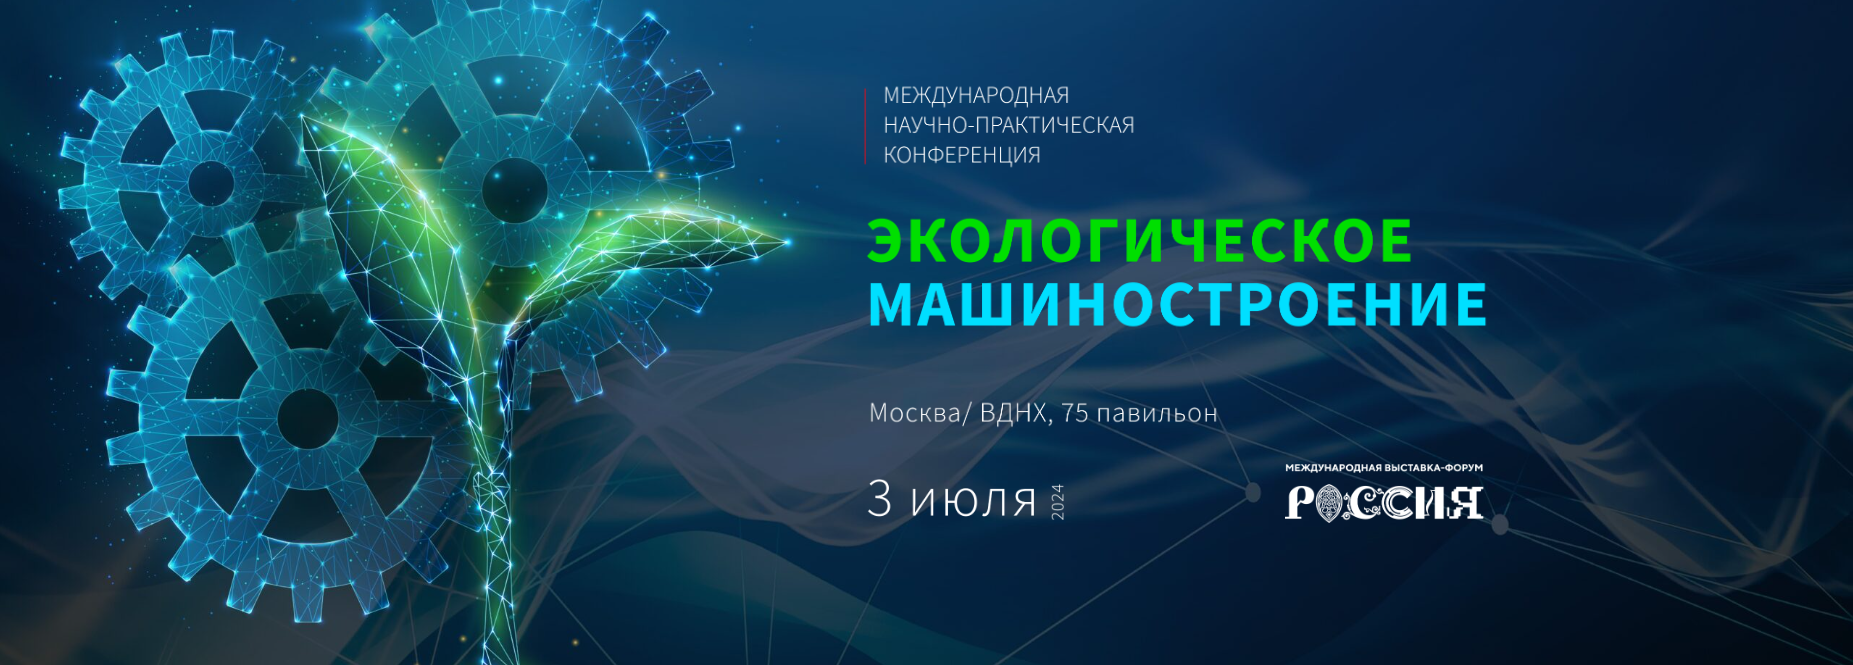 II Международная научно-практическая конференция «Экологическое машиностроение»